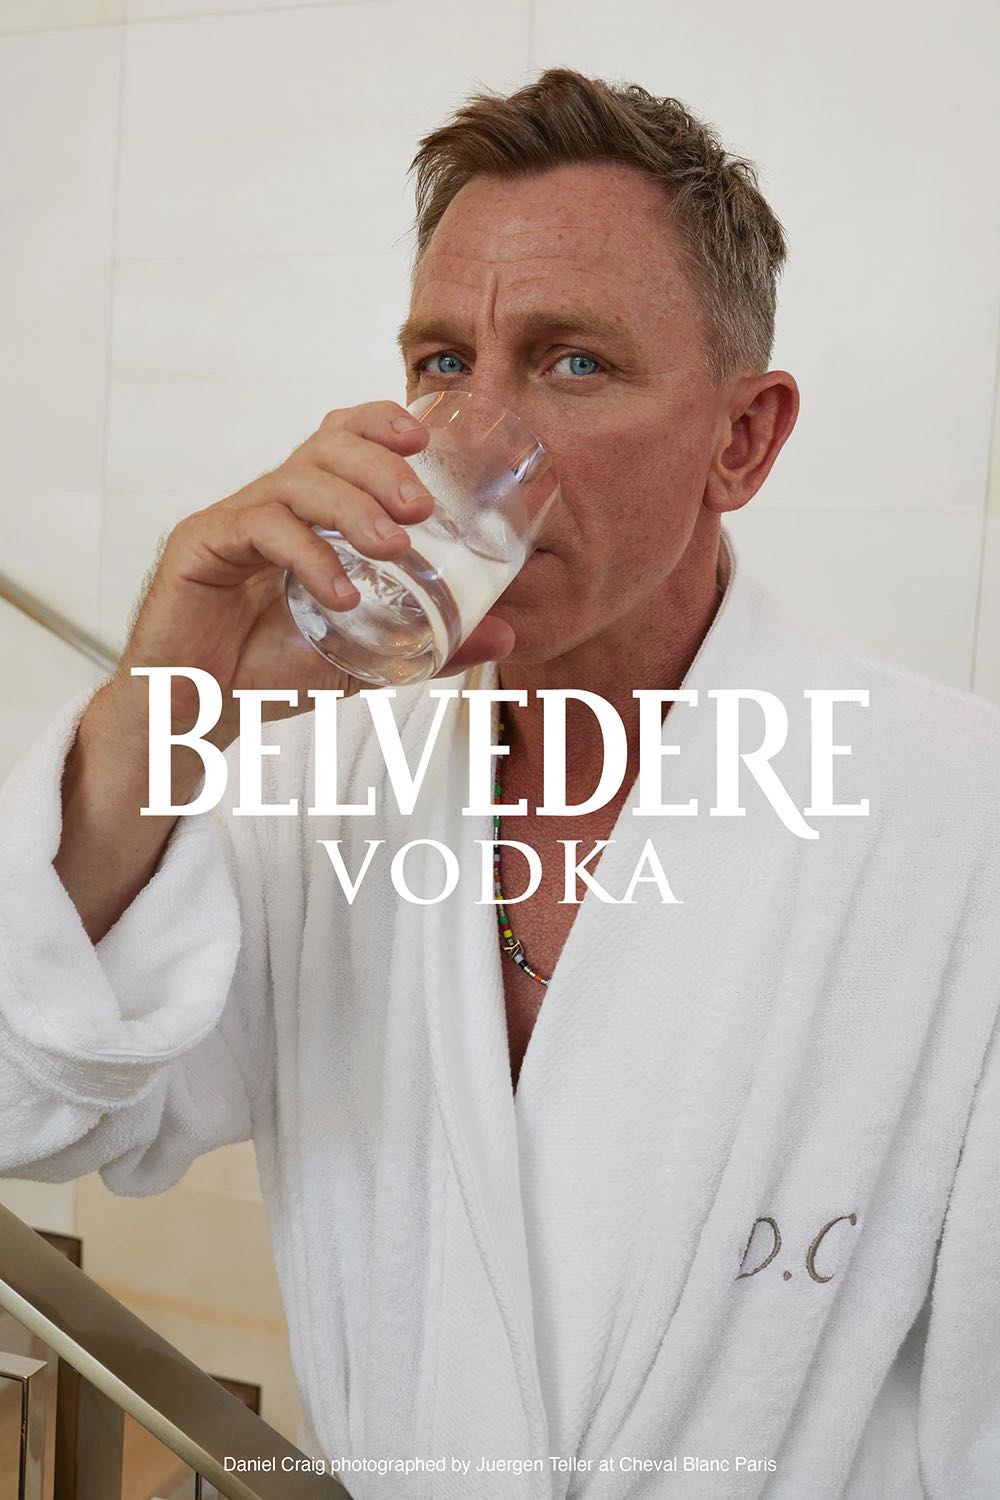 Daniel Craig en la campaña de vodka Belvedere